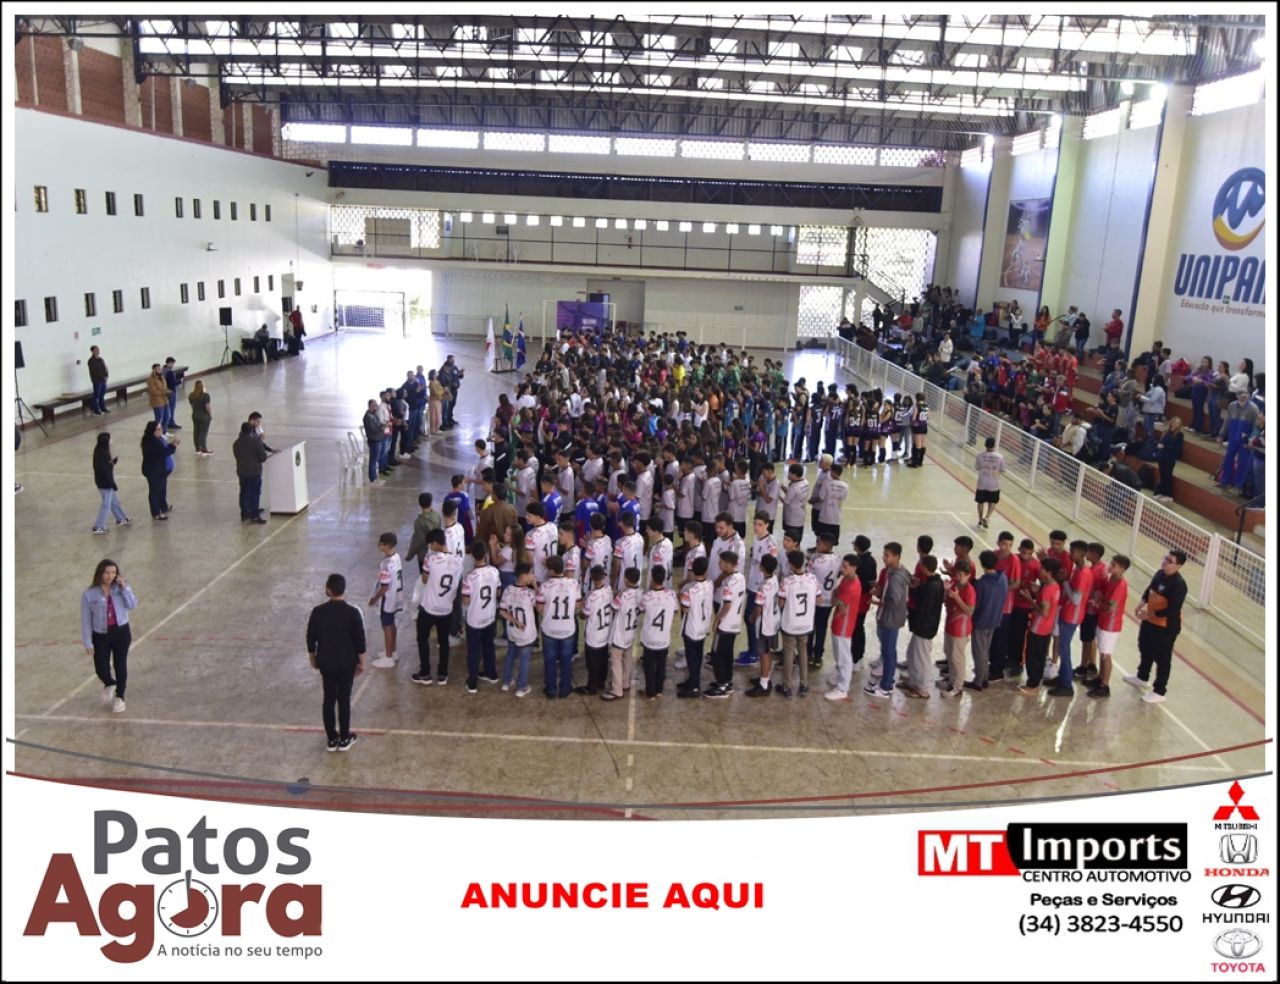 Jogos Escolares de Minas Gerais - JEMG/2023. - FEEMG - Federação de  Esportes Estudantis de Minas Gerais